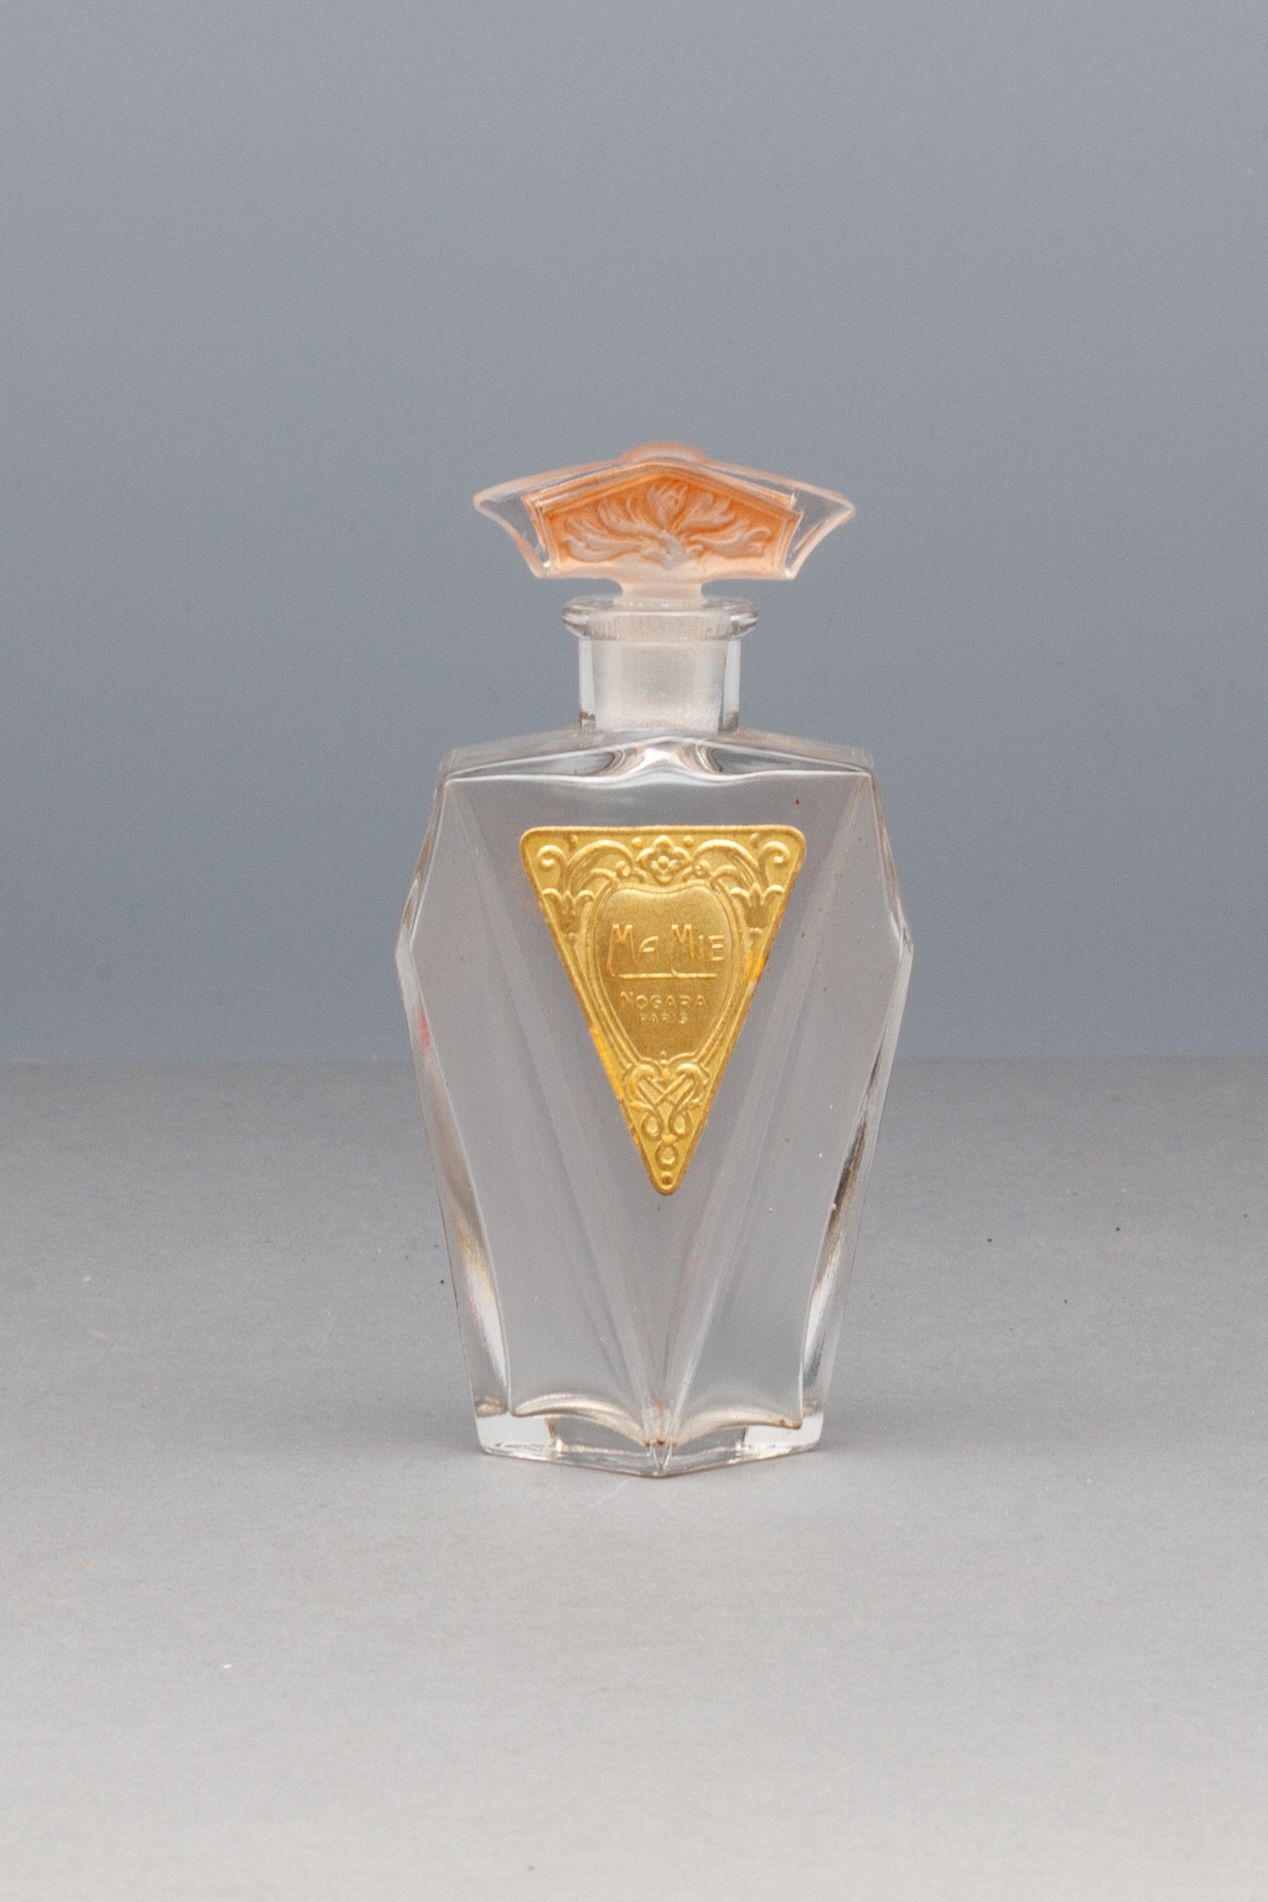 NOGARA "MA MIE" 玻璃瓶，侧面有切割的装饰，其标签是镀金的，有一个传说。带叶子的乳白色玻璃瓶塞。高11厘米